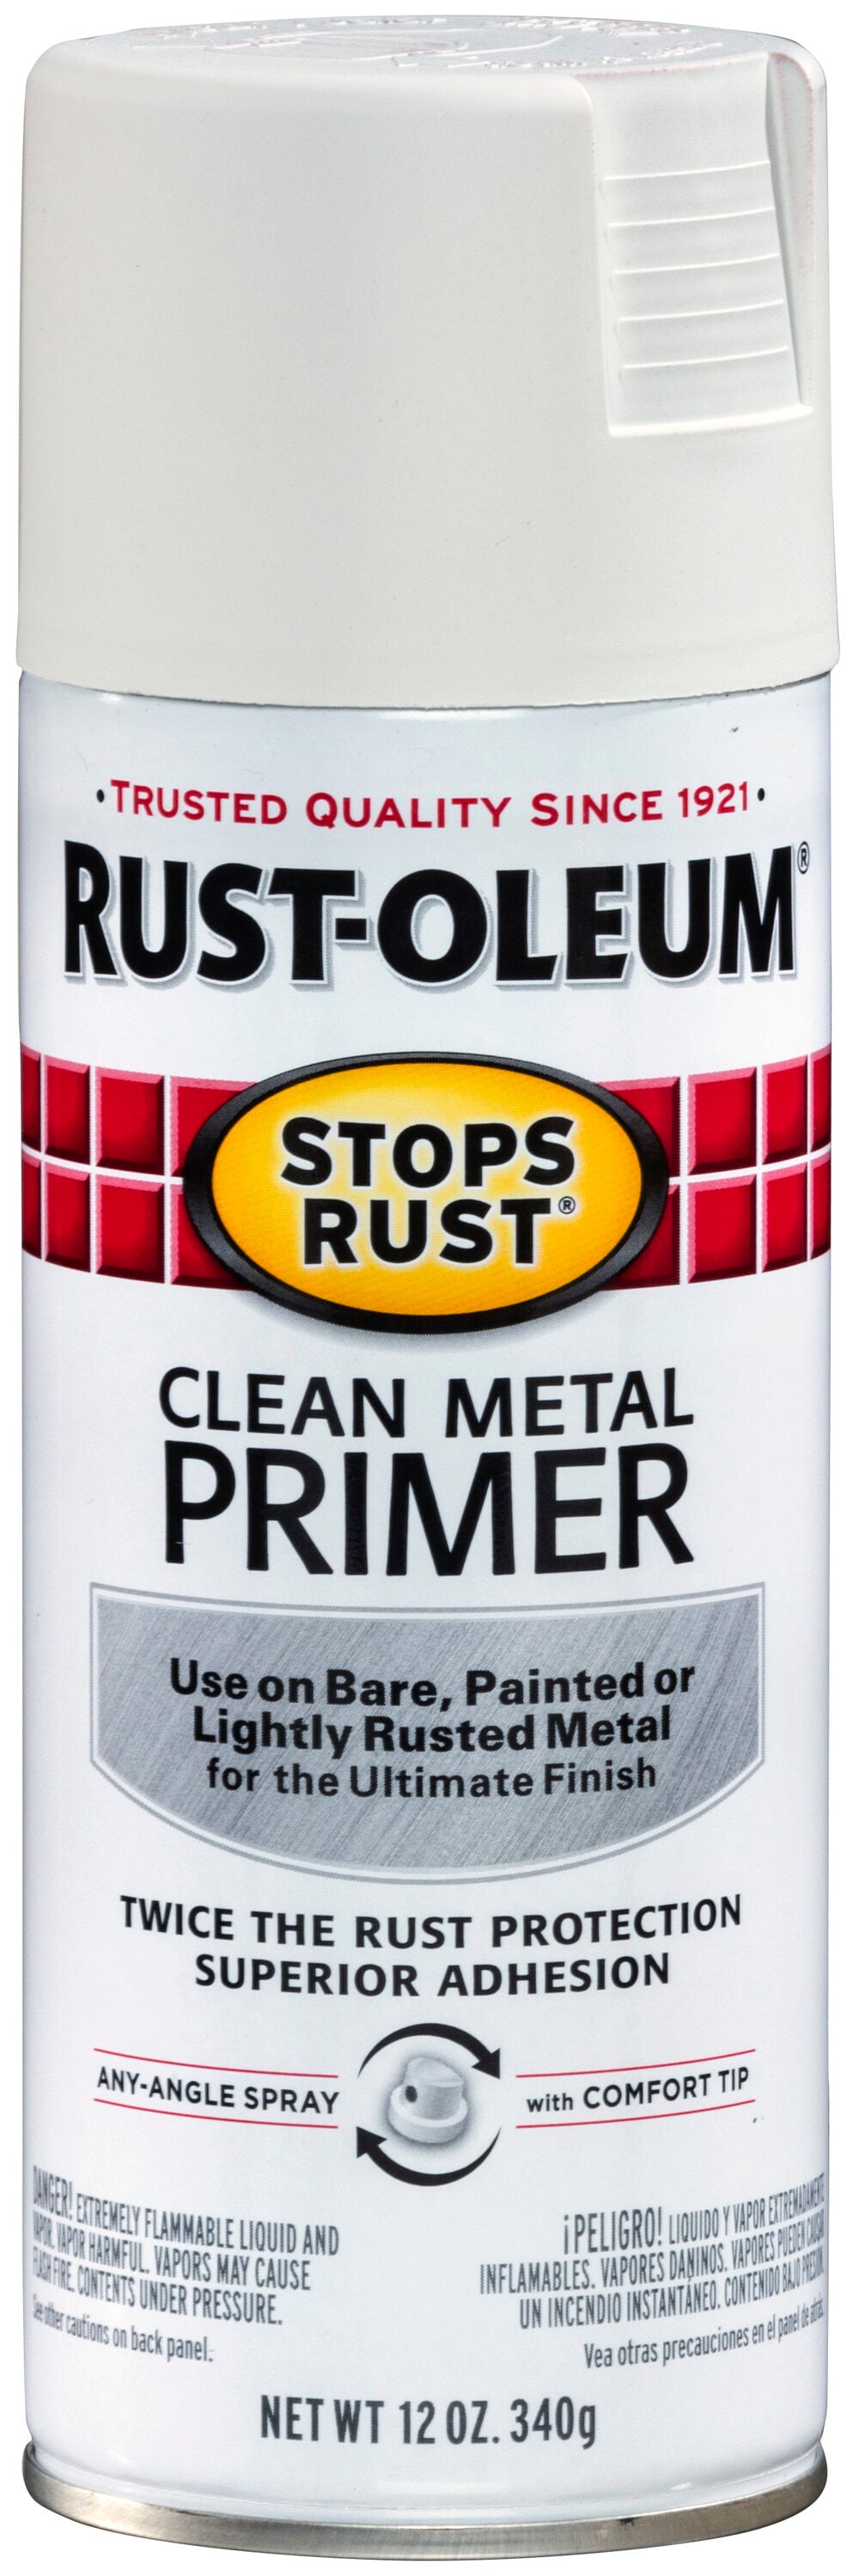 RUST-OLEUM Clean Metal Primer